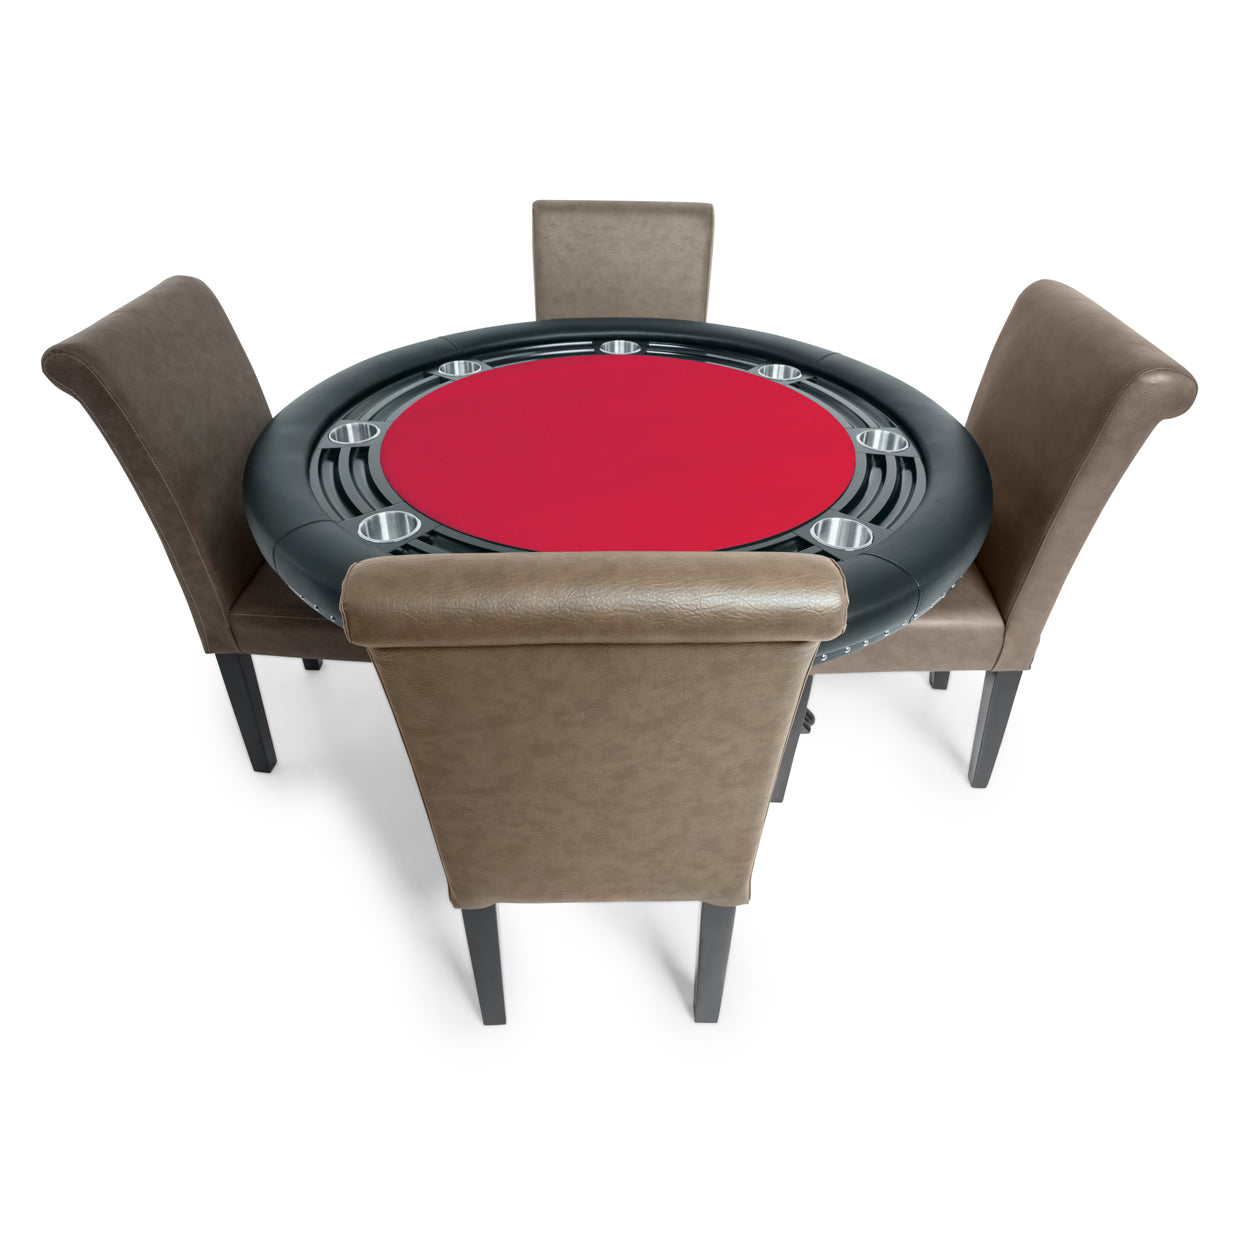 BBO The Nighthawk Poker Table Black Leg Velveteen Red And BBO Chair